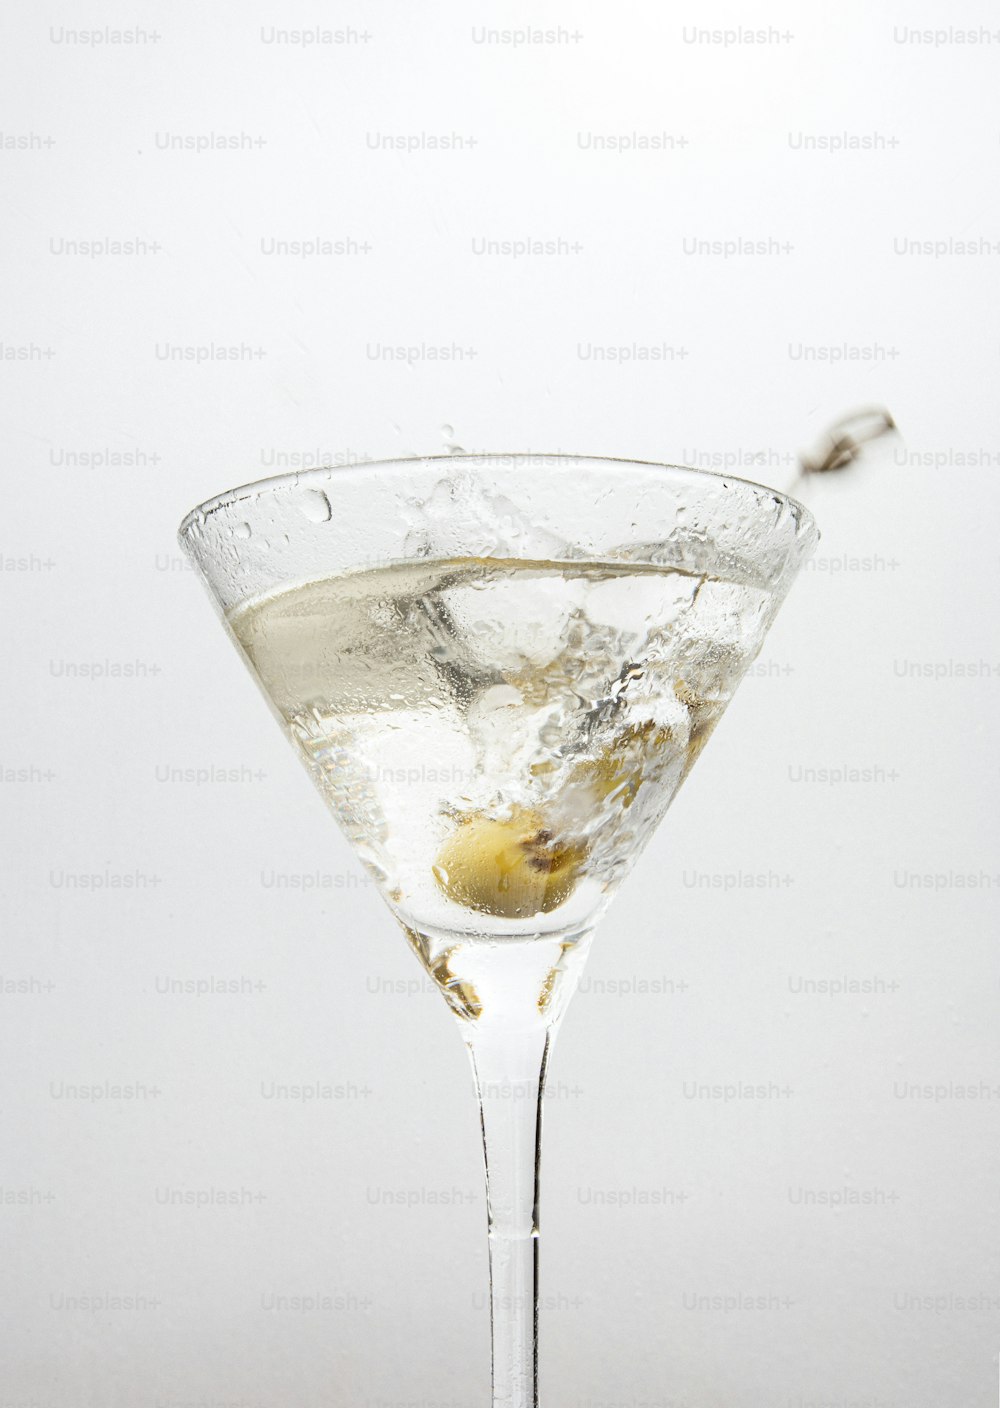 Un vaso de martini lleno de una bebida de martini